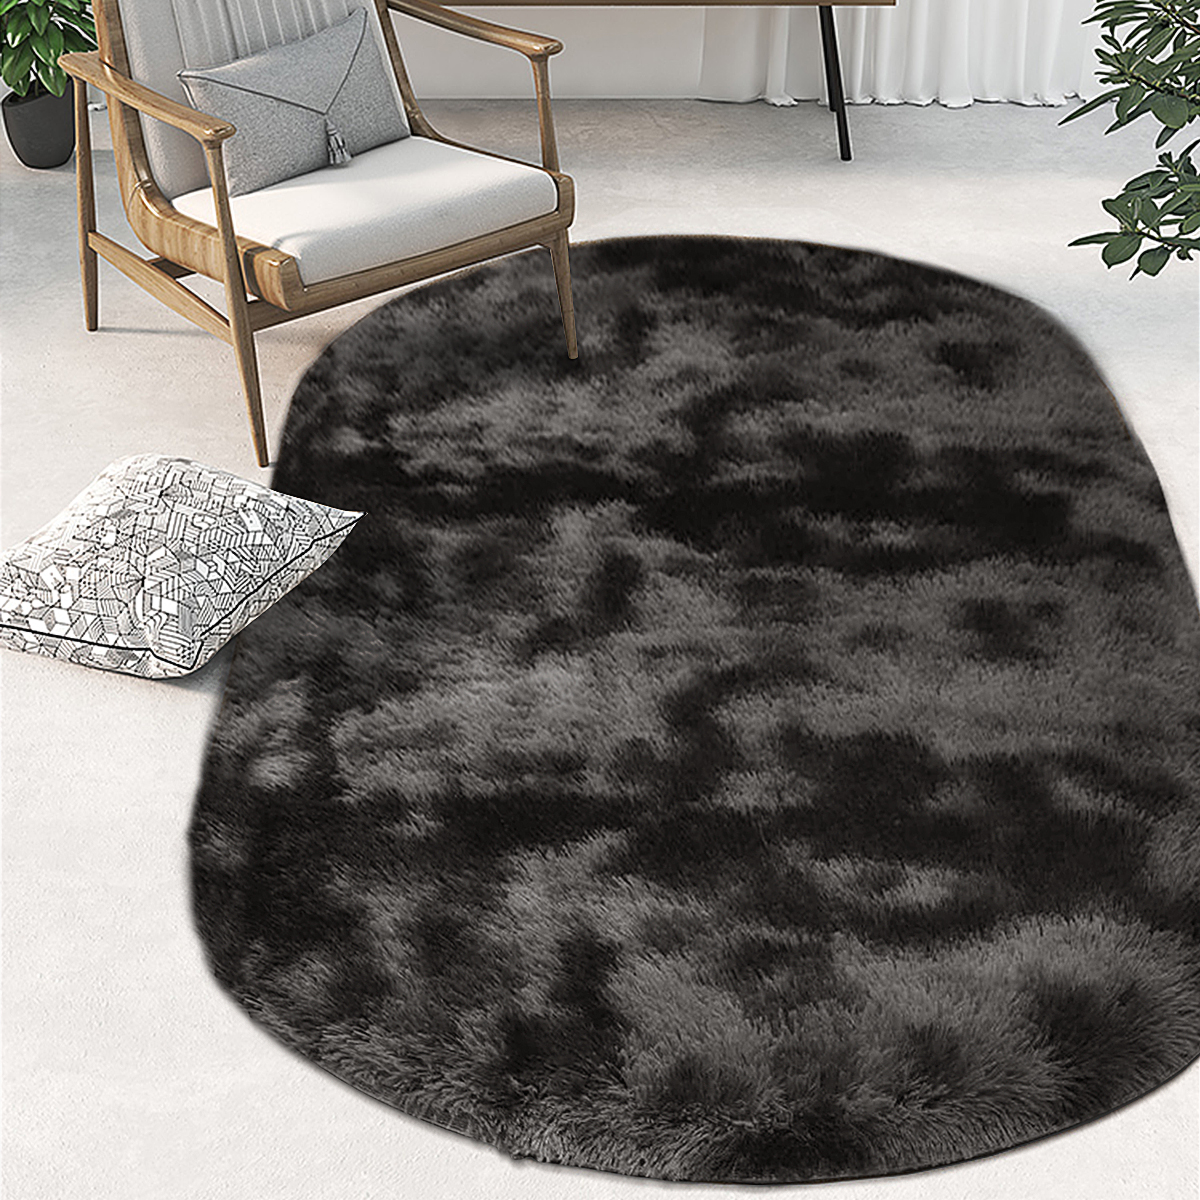 Long-Variegated-Tie-dye-Gradient-Carpet-Living-Room-Bedroom-Bedside-Blanket-Coffee-Table-Cushion-Ful-1730424-5